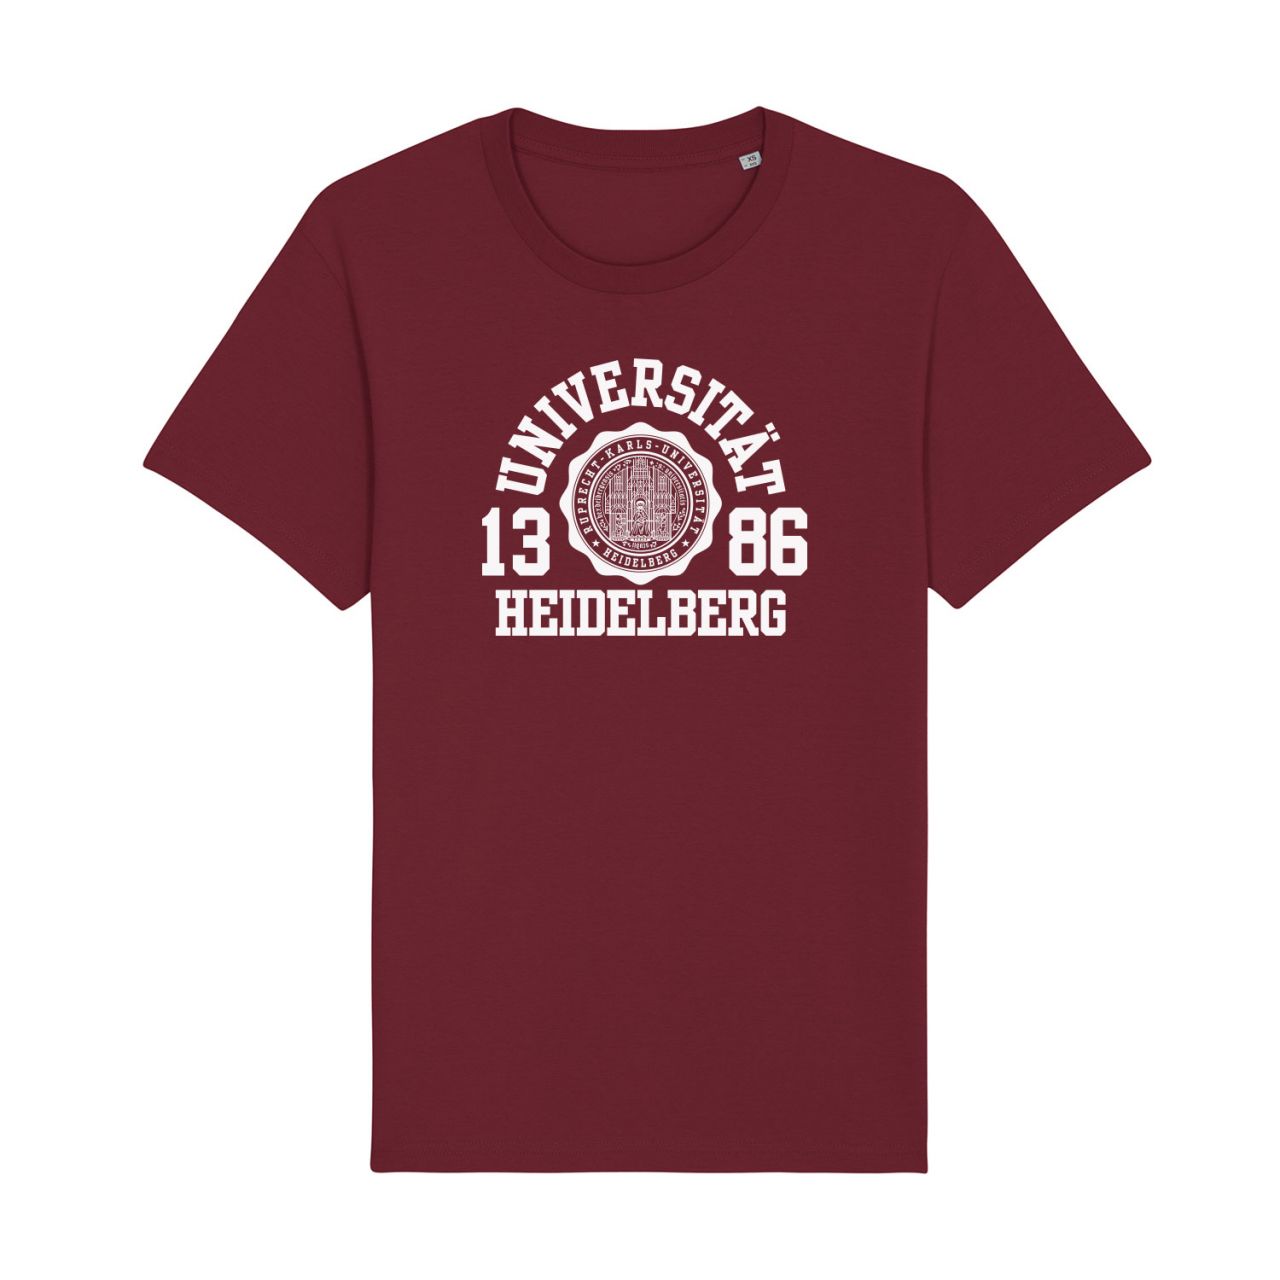 Herren Organic T-Shirt, burgundy, marshall